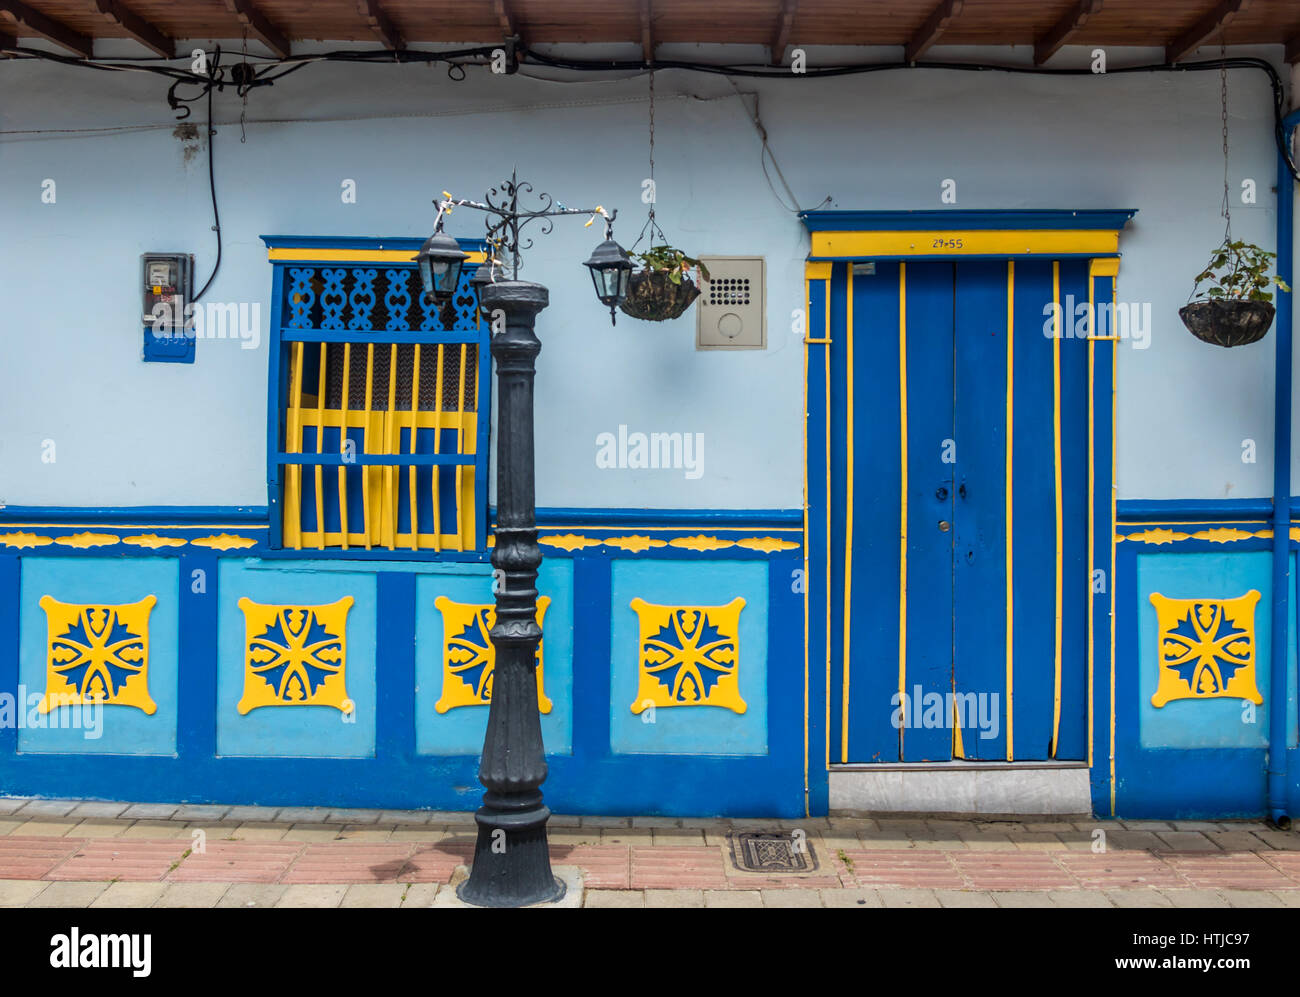 Maison colorée - Guatape, Colombie Banque D'Images